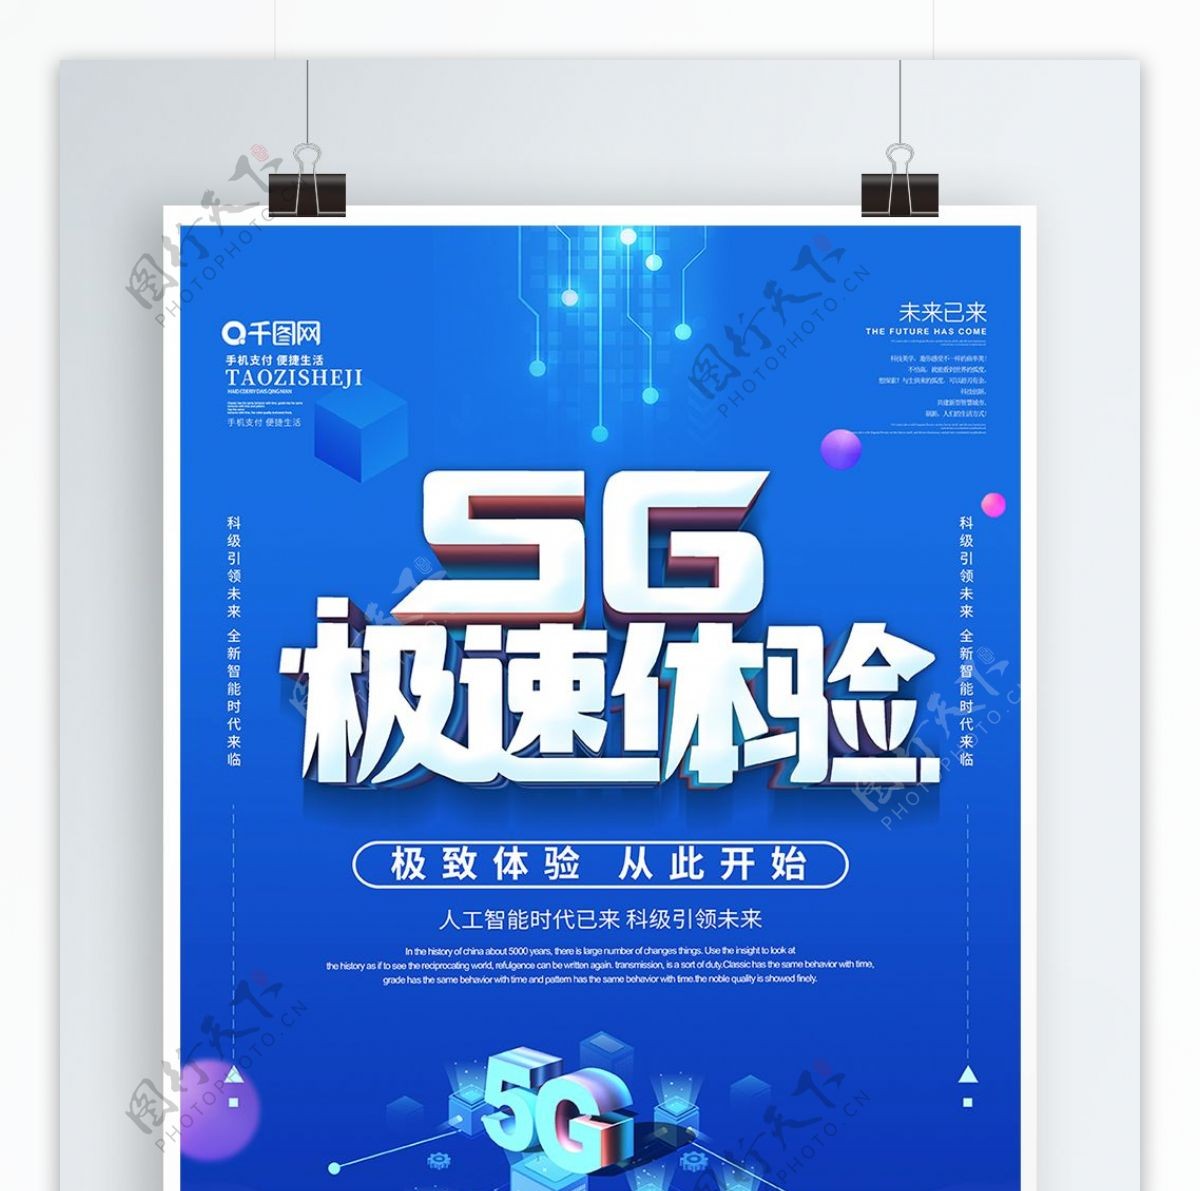 蓝色科技风5g极速体验宣传海报